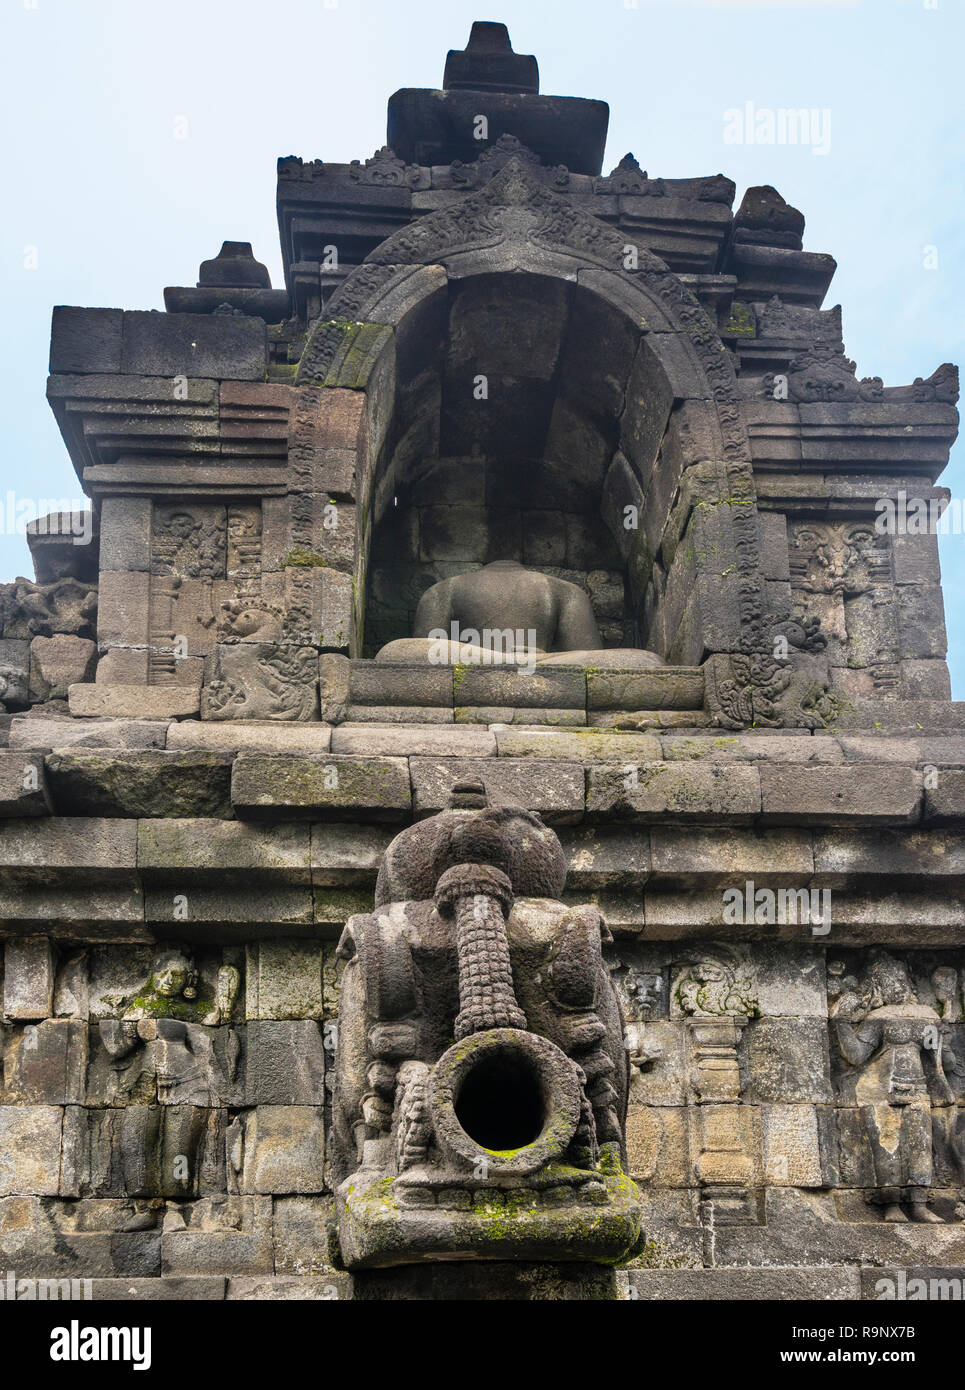 Acque piovane scolpito il tubo di lancio al di sotto di una testa di Budda seduto statua in una nicchia a IX secolo Mahayana Borobudur tempio buddista, Giava centrale, Indonesia Foto Stock